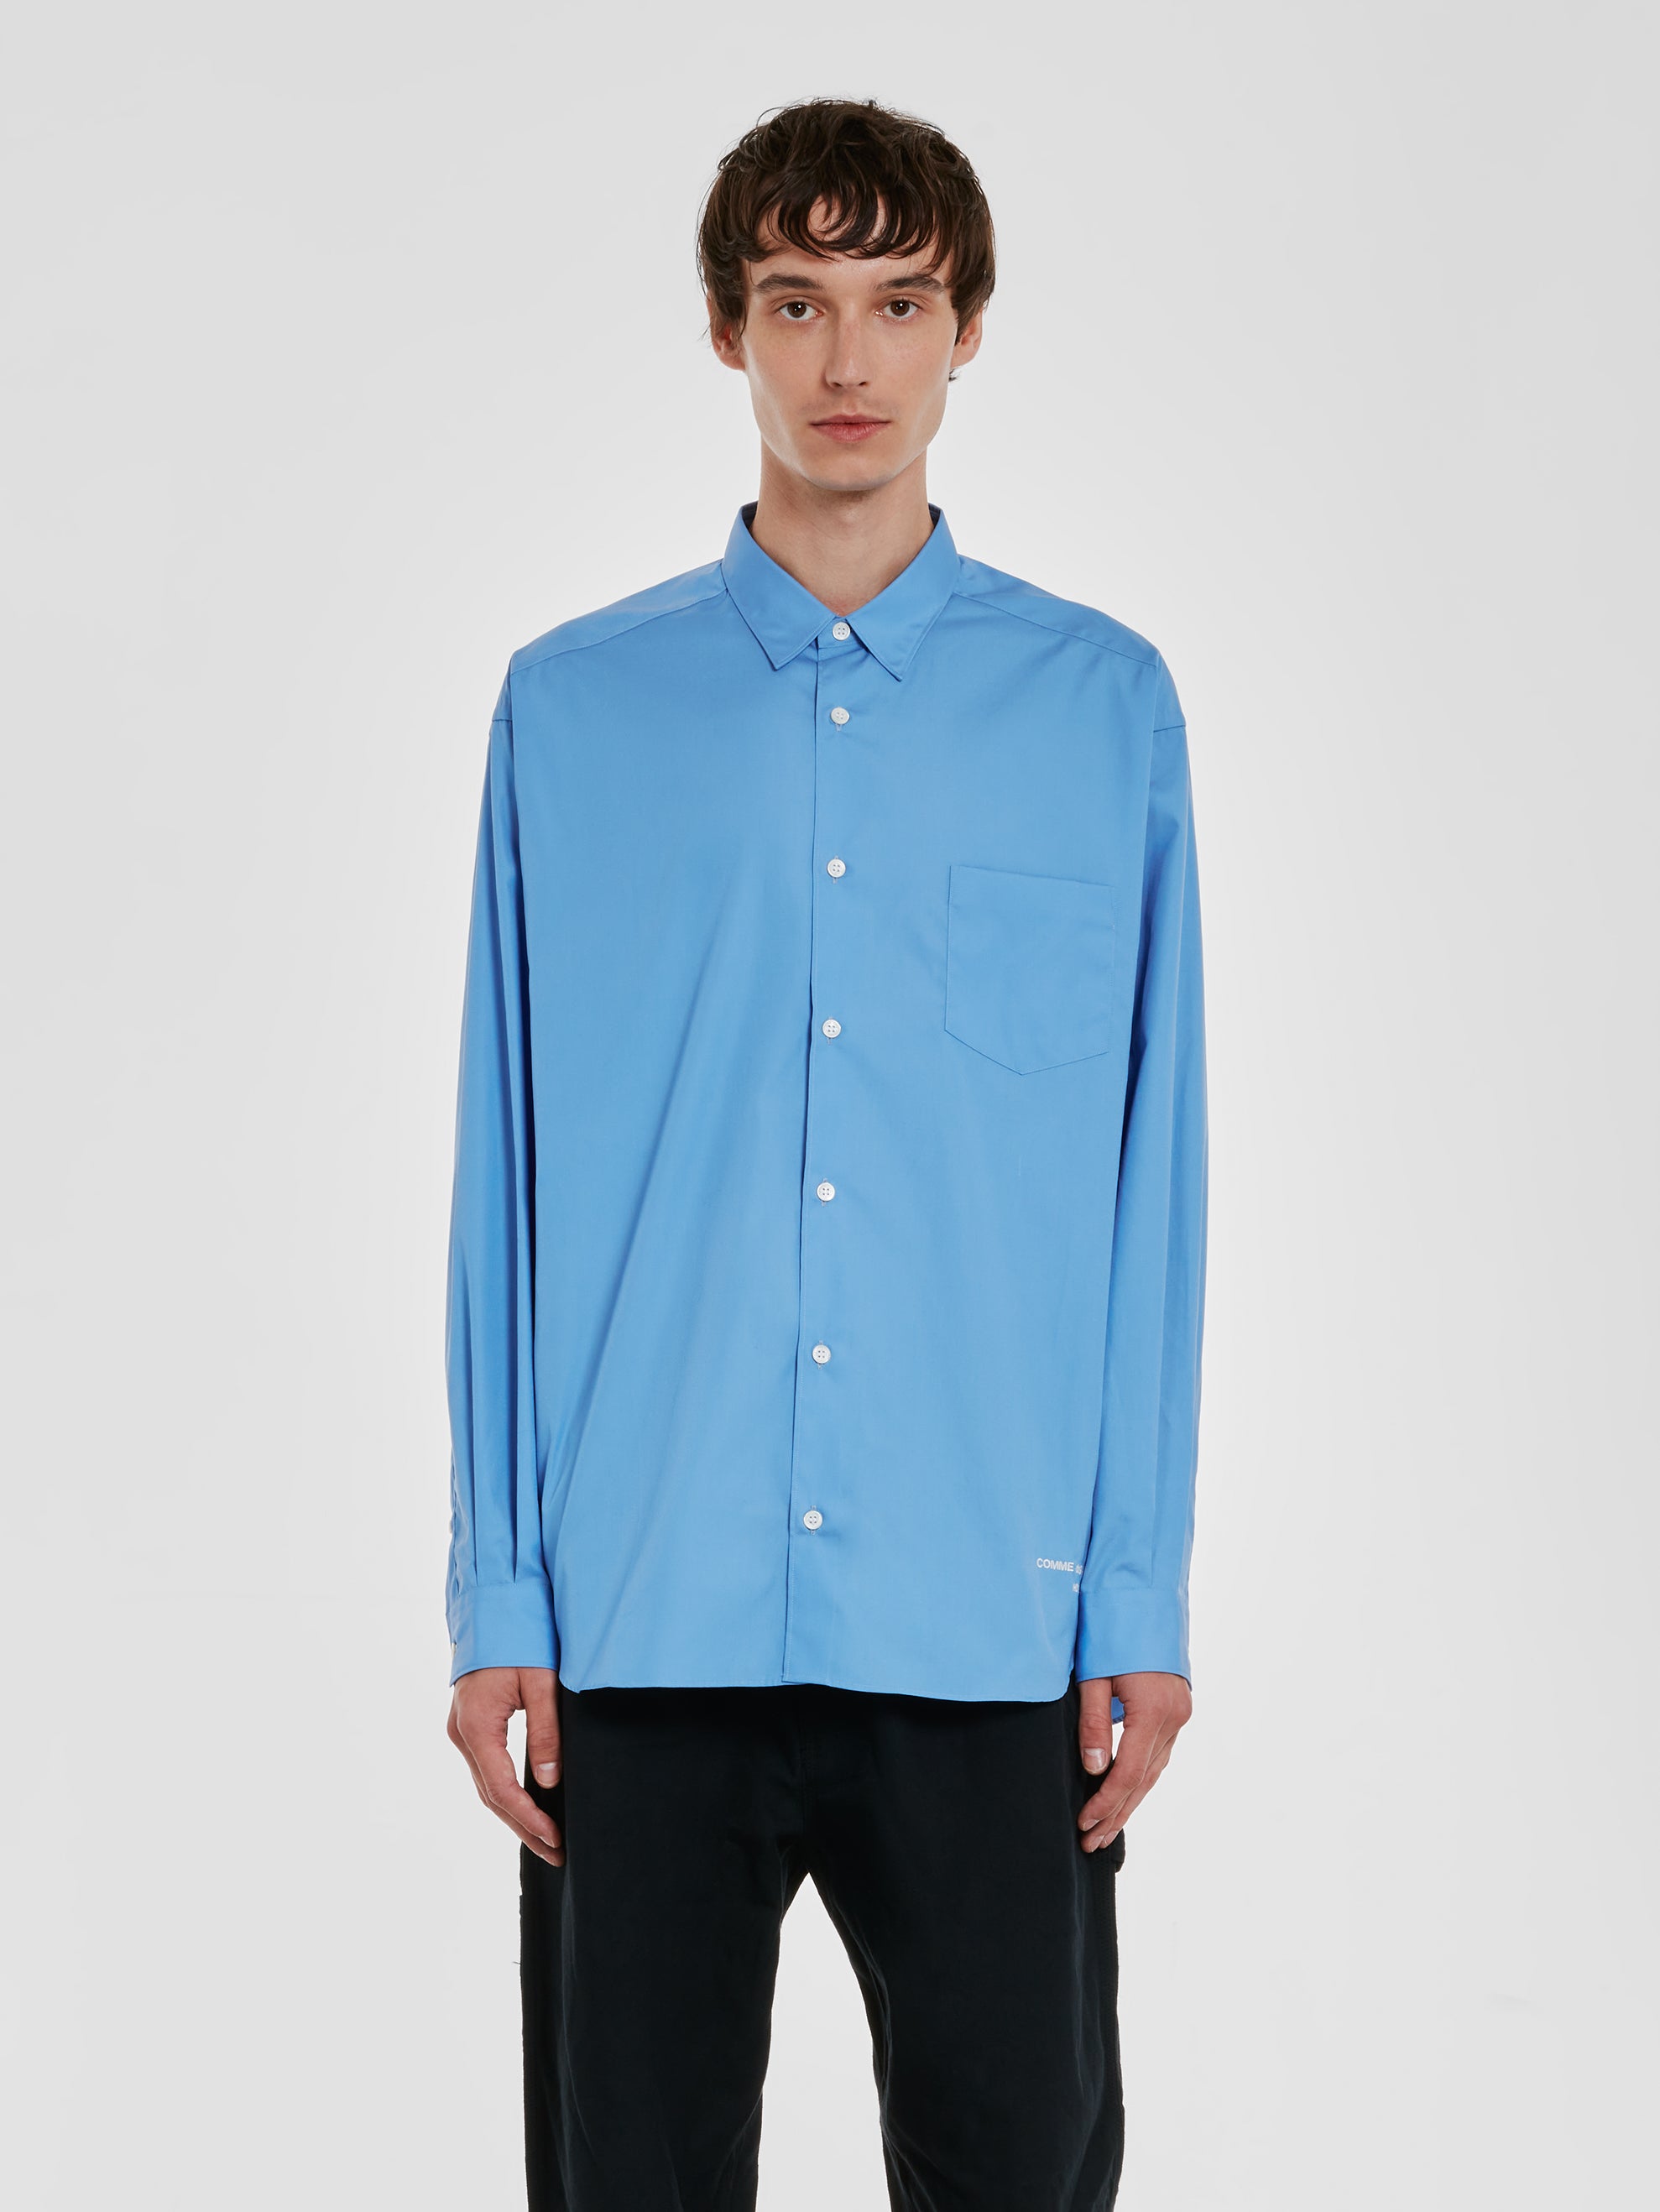 Comme des Garçons Homme - Men’s Cotton Shirt - (Light Blue) view 1